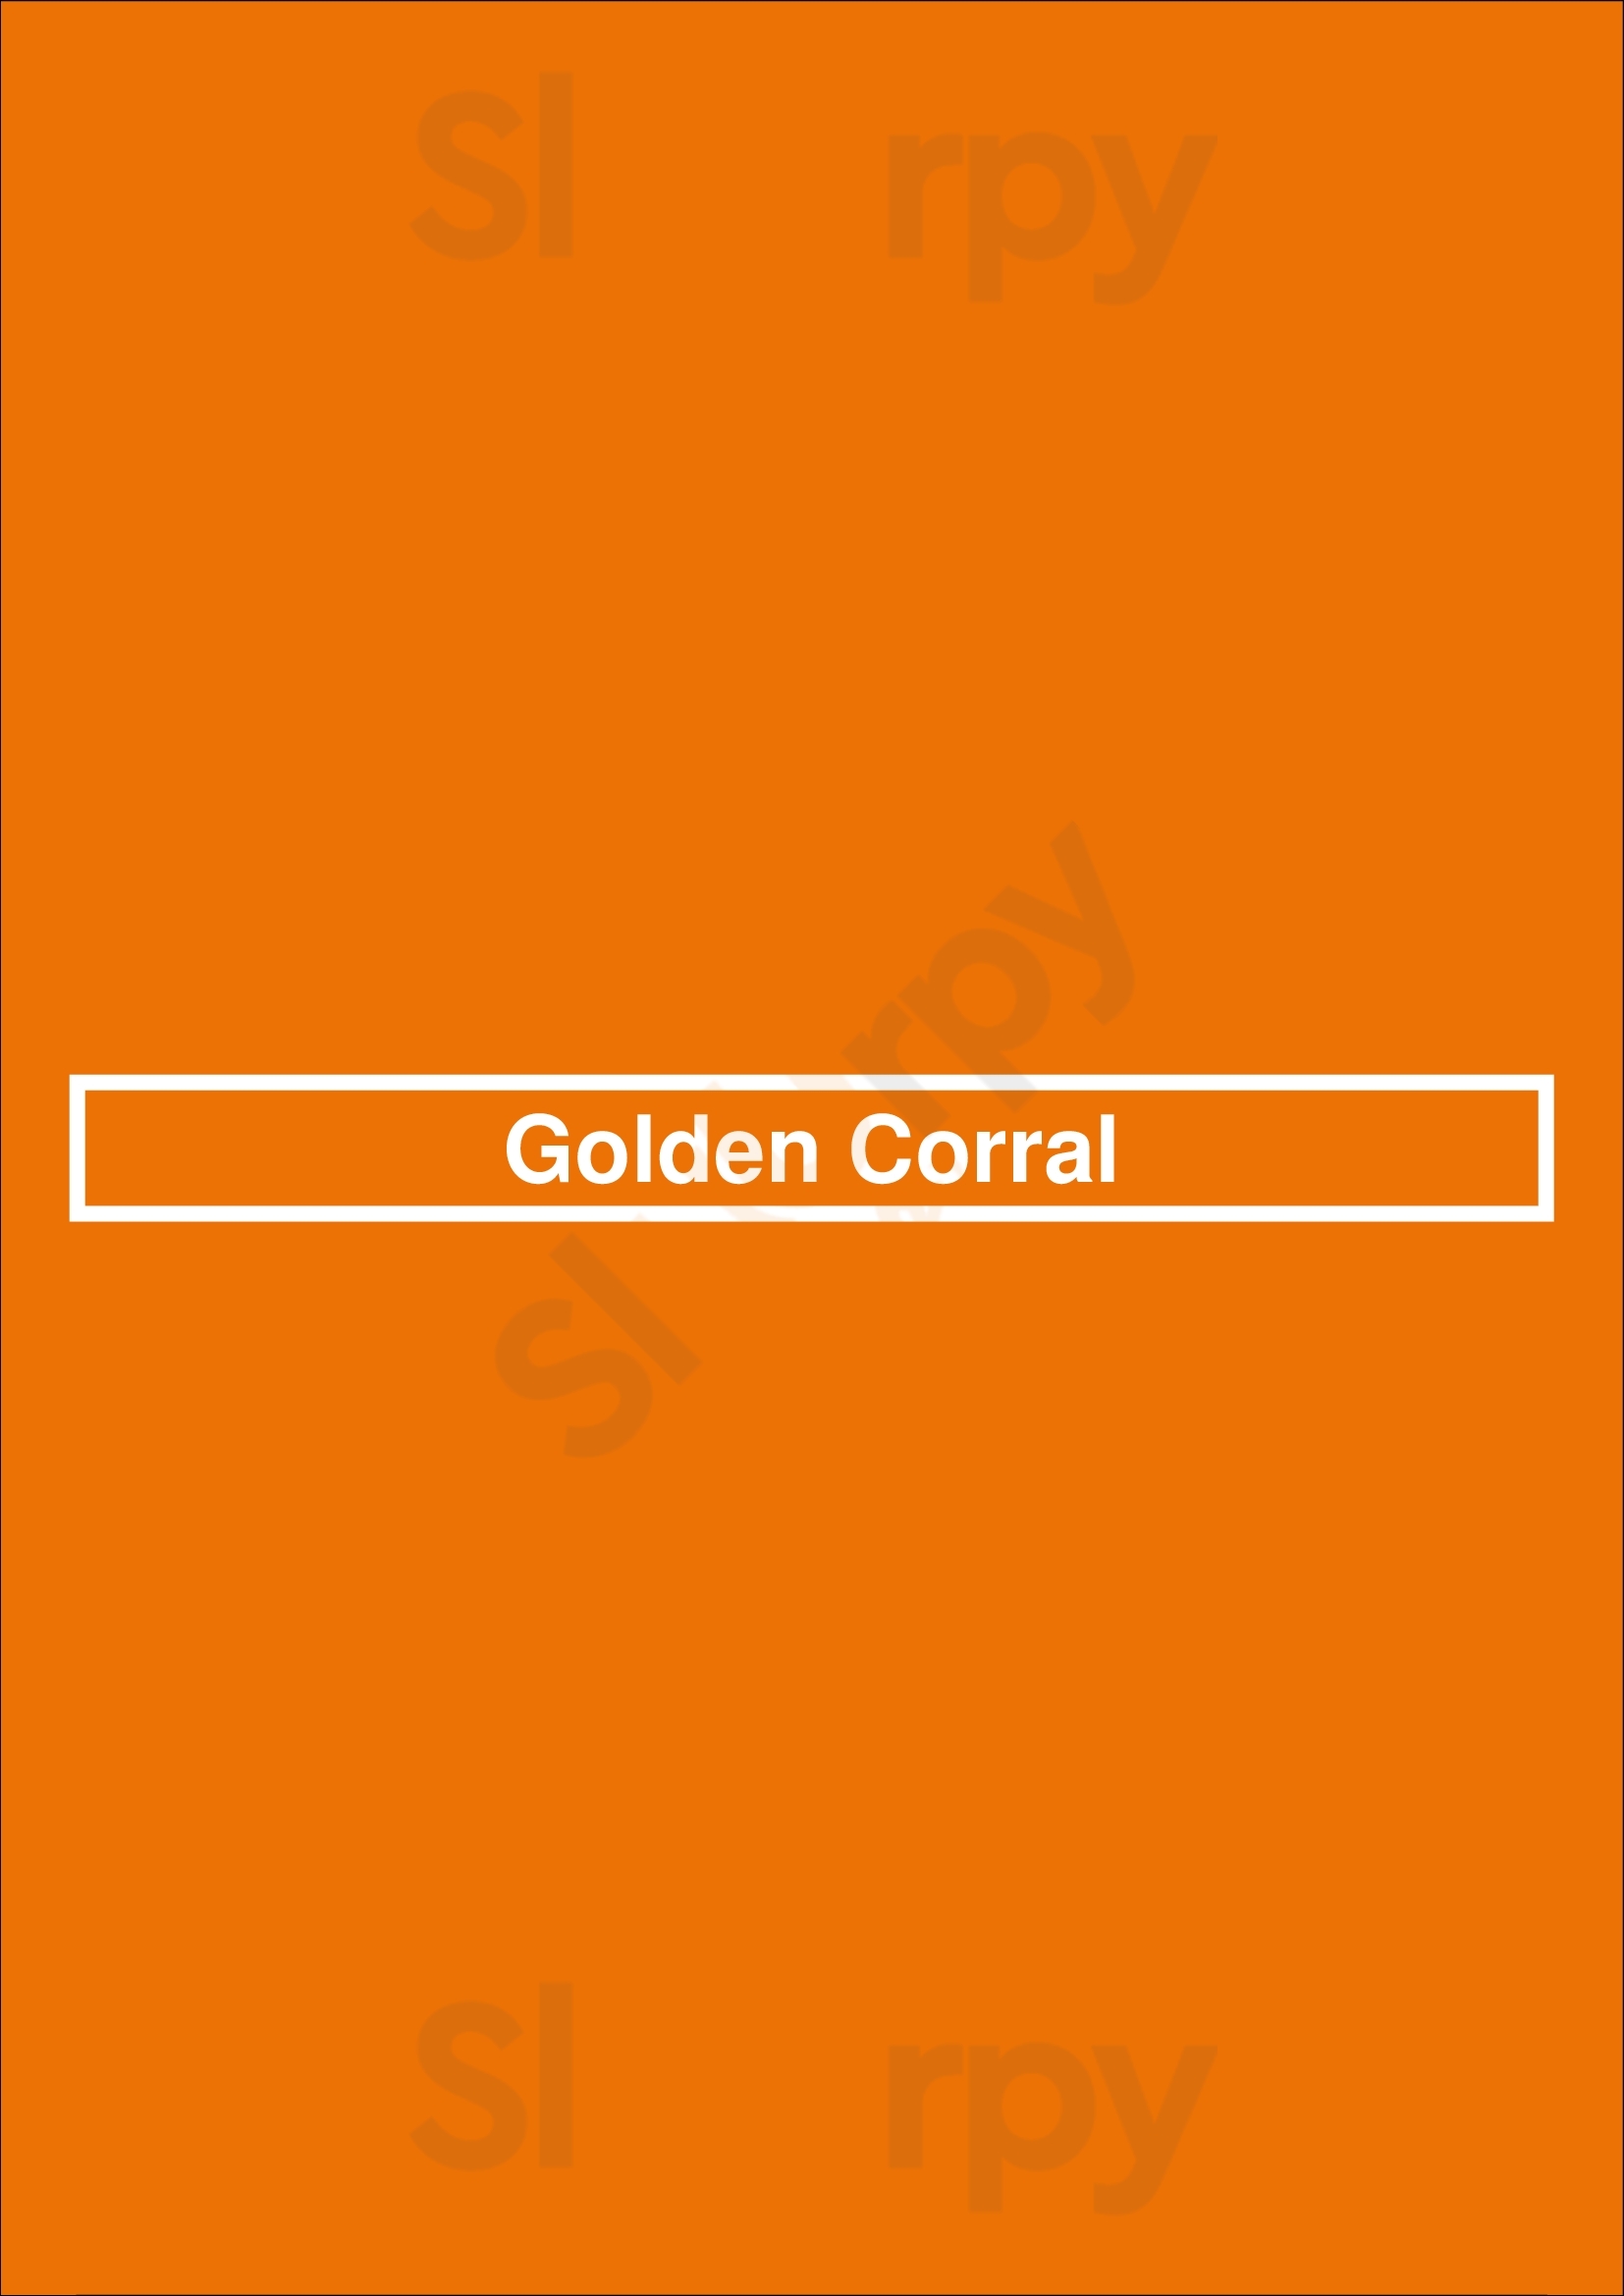 Golden Corral Indianapolis Menu - 1